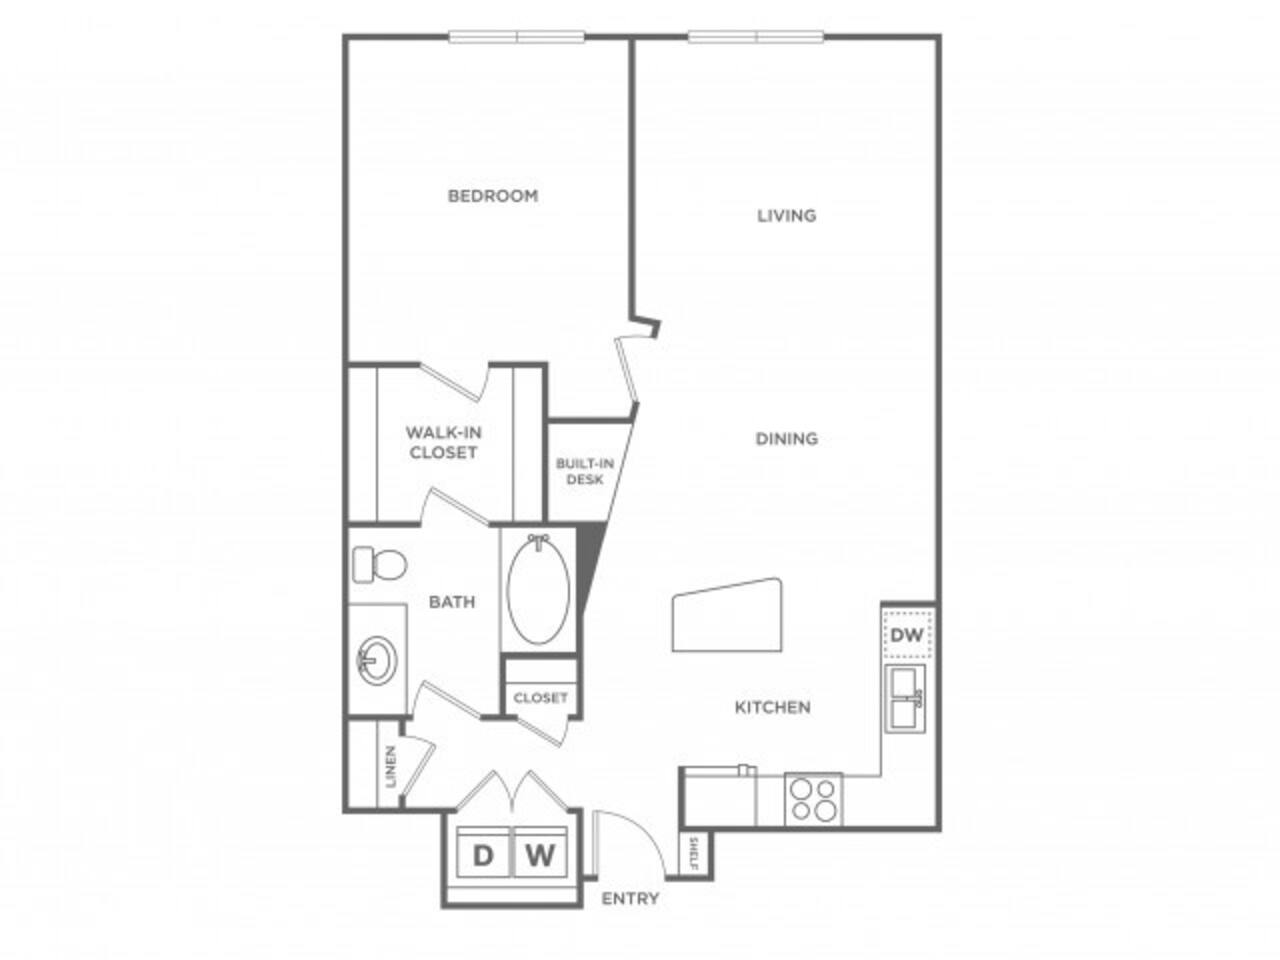 Floorplan diagram for Crimson, showing 1 bedroom